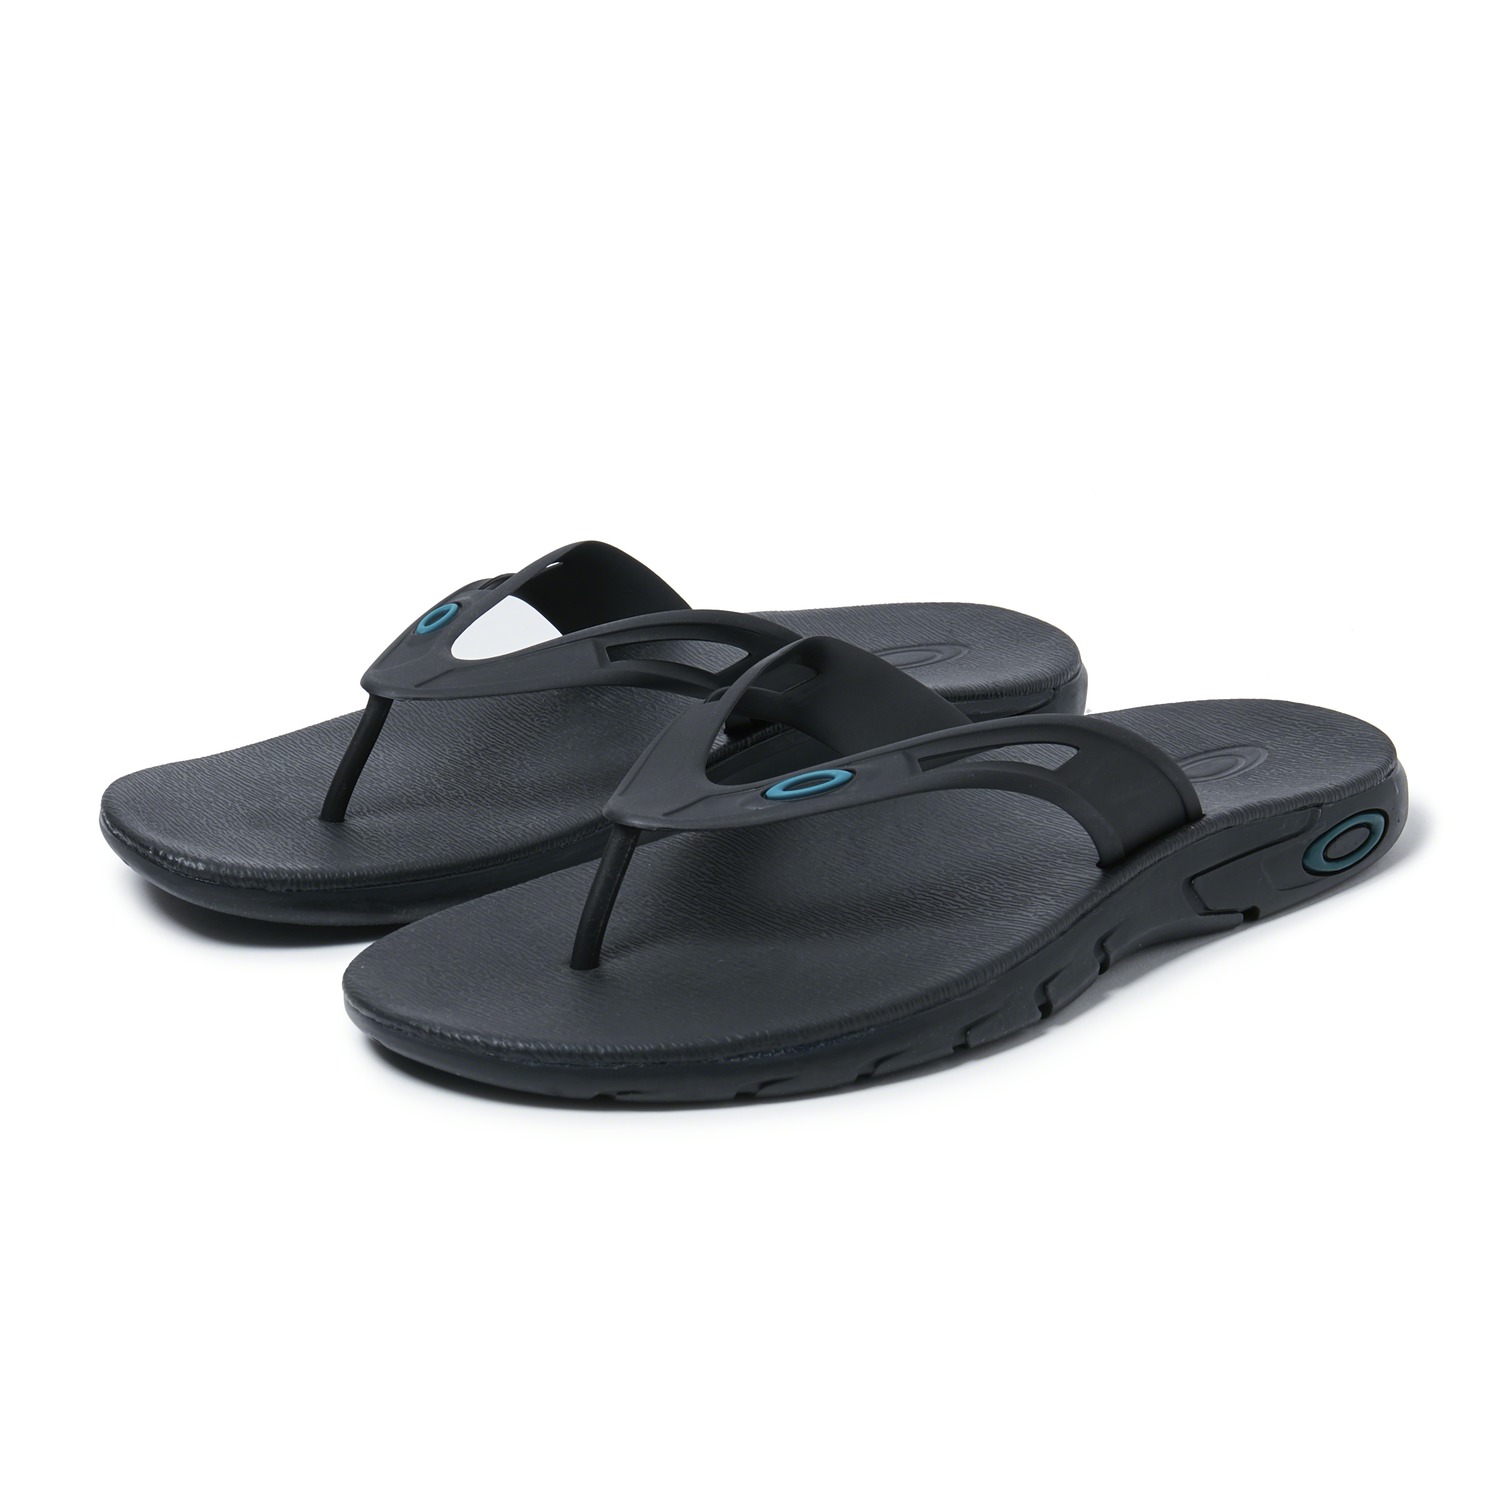 Oakley Ultimate Comfort Ellipse Flip Flop Summer Sandals, Men's Size 9 ...